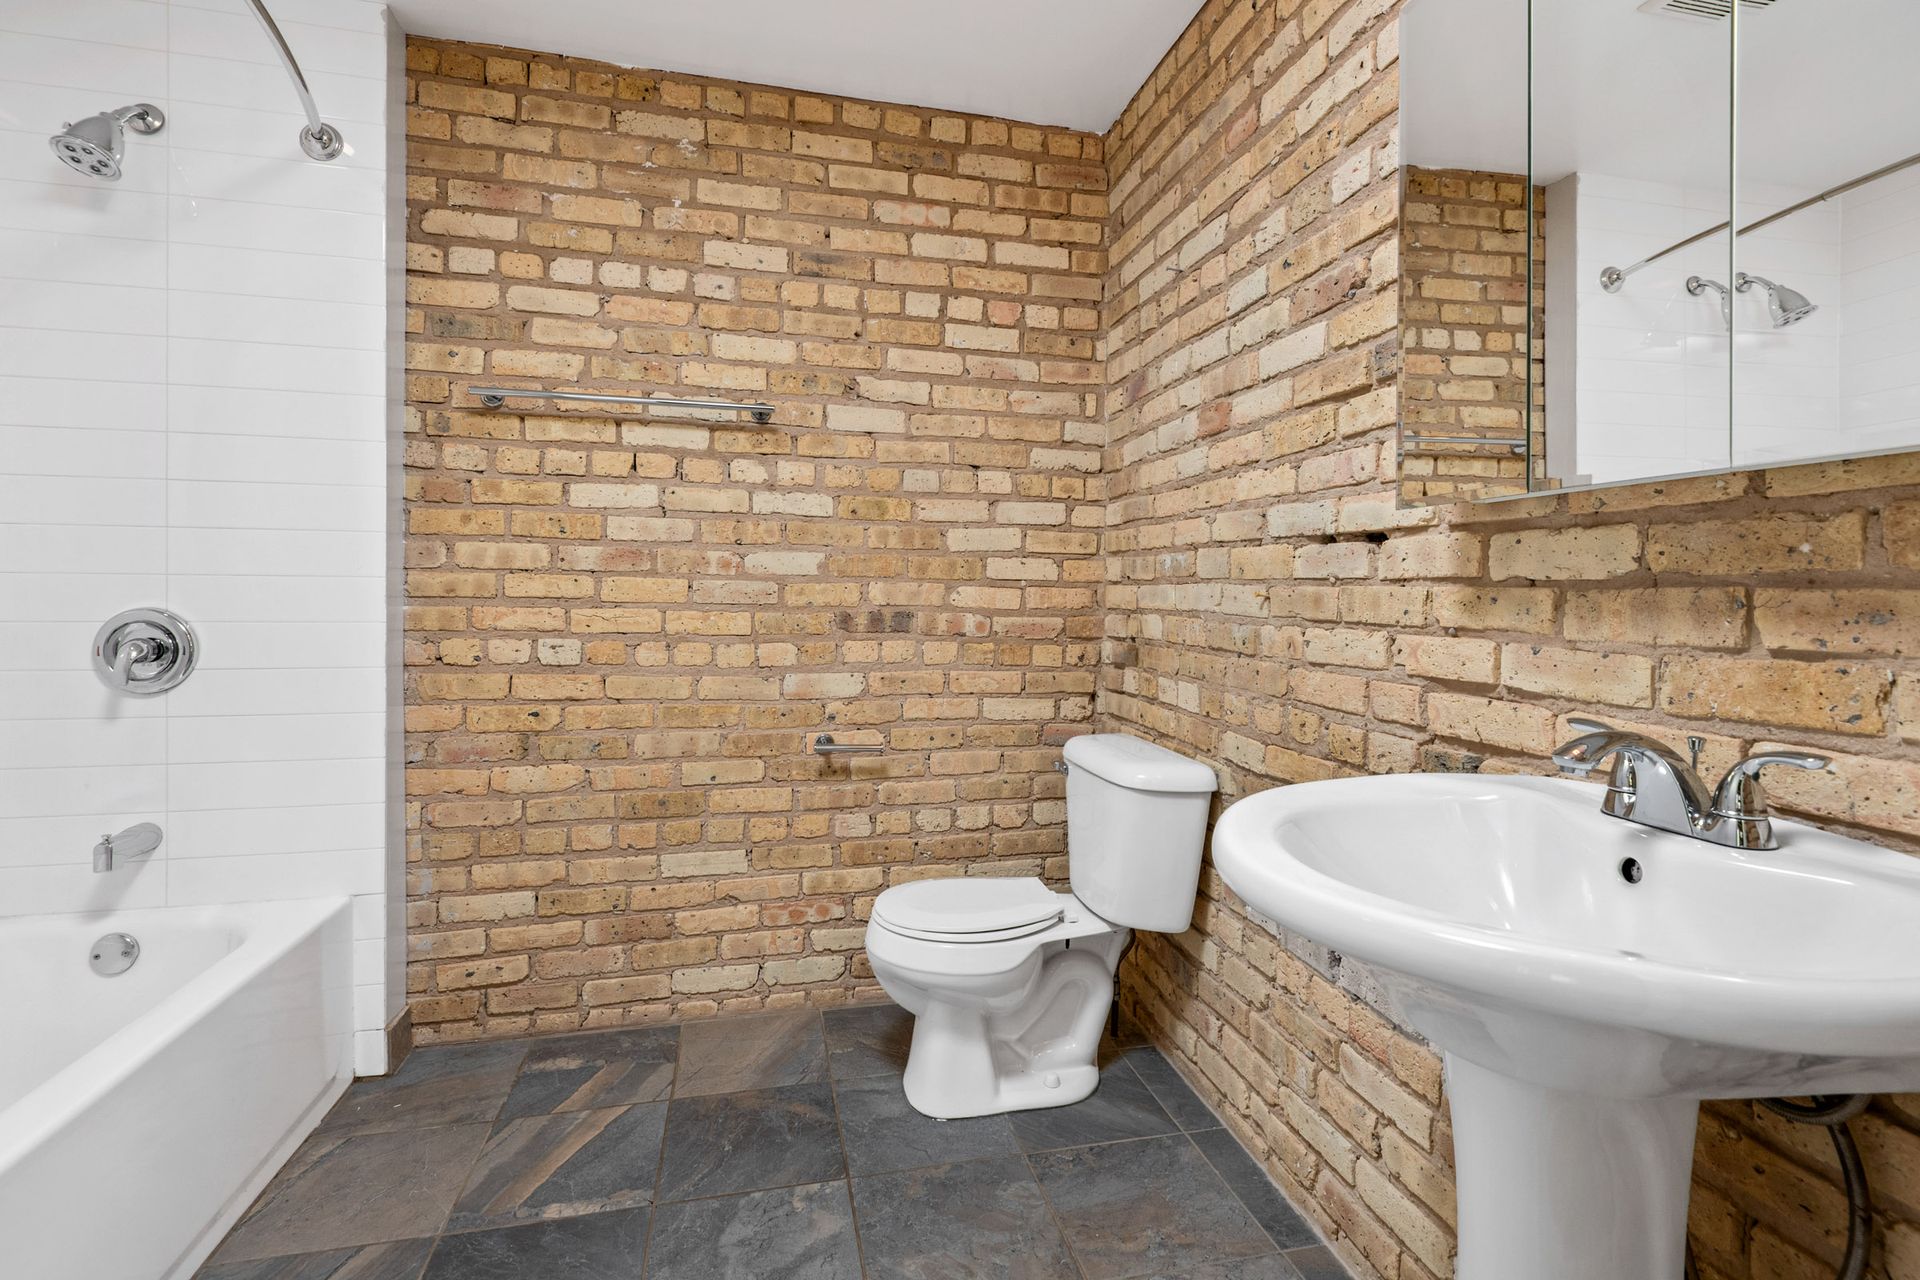 A bathroom with a toilet, sink, bathtub, and brick wall.